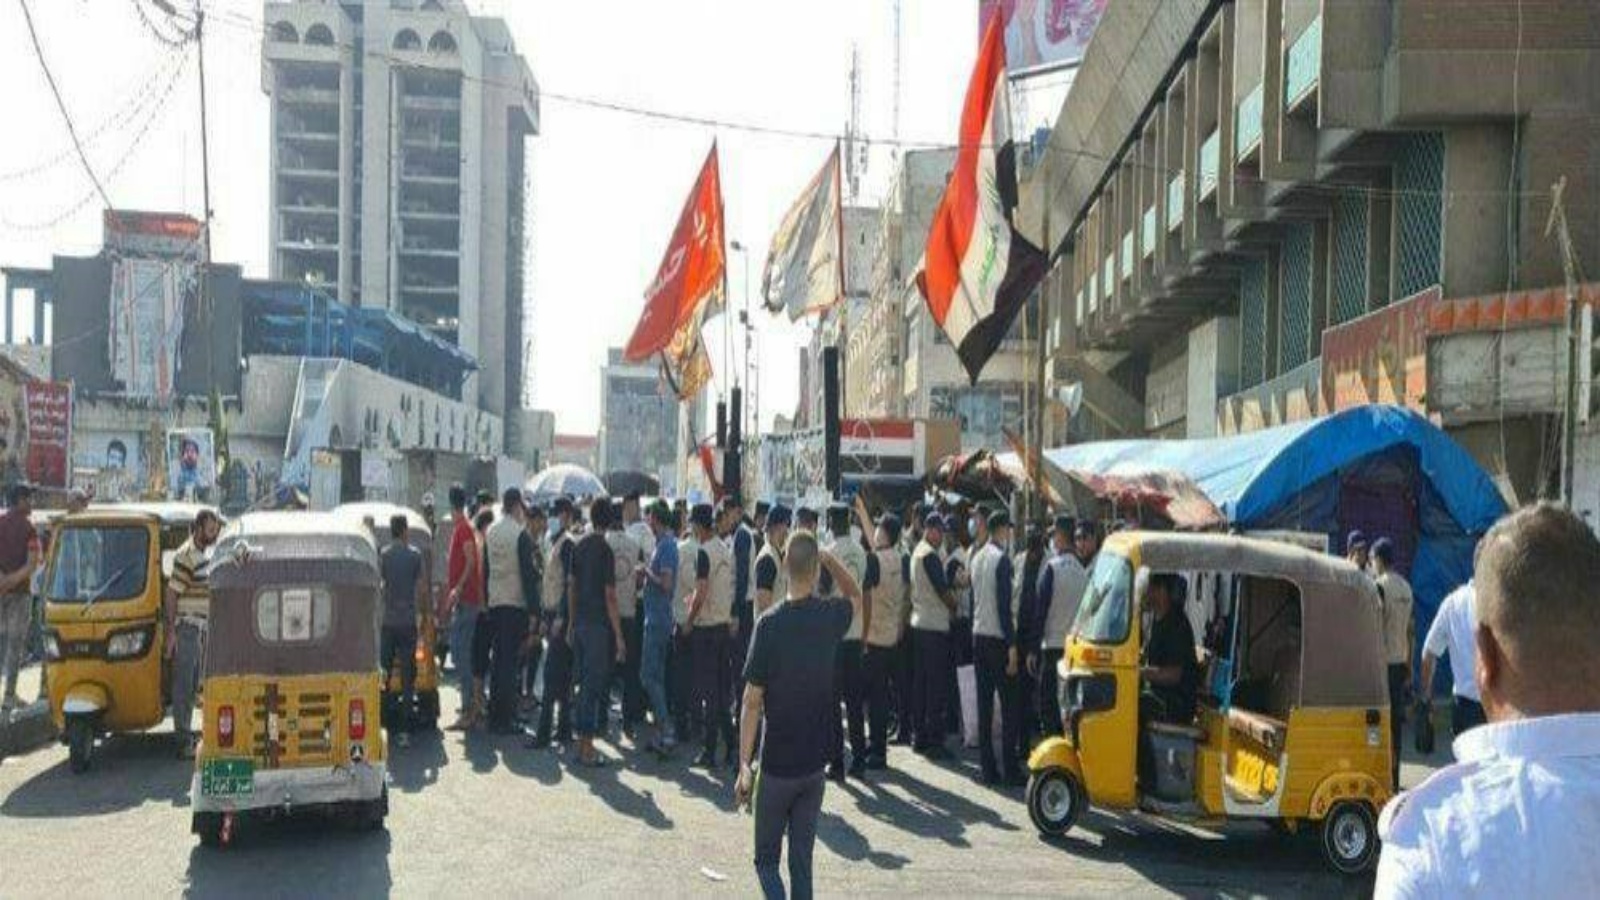 انتشار الشرطة المجتمعية مع القوات الامنية في ساحة التحرير مركز الاحتجاجات وسط بغداد